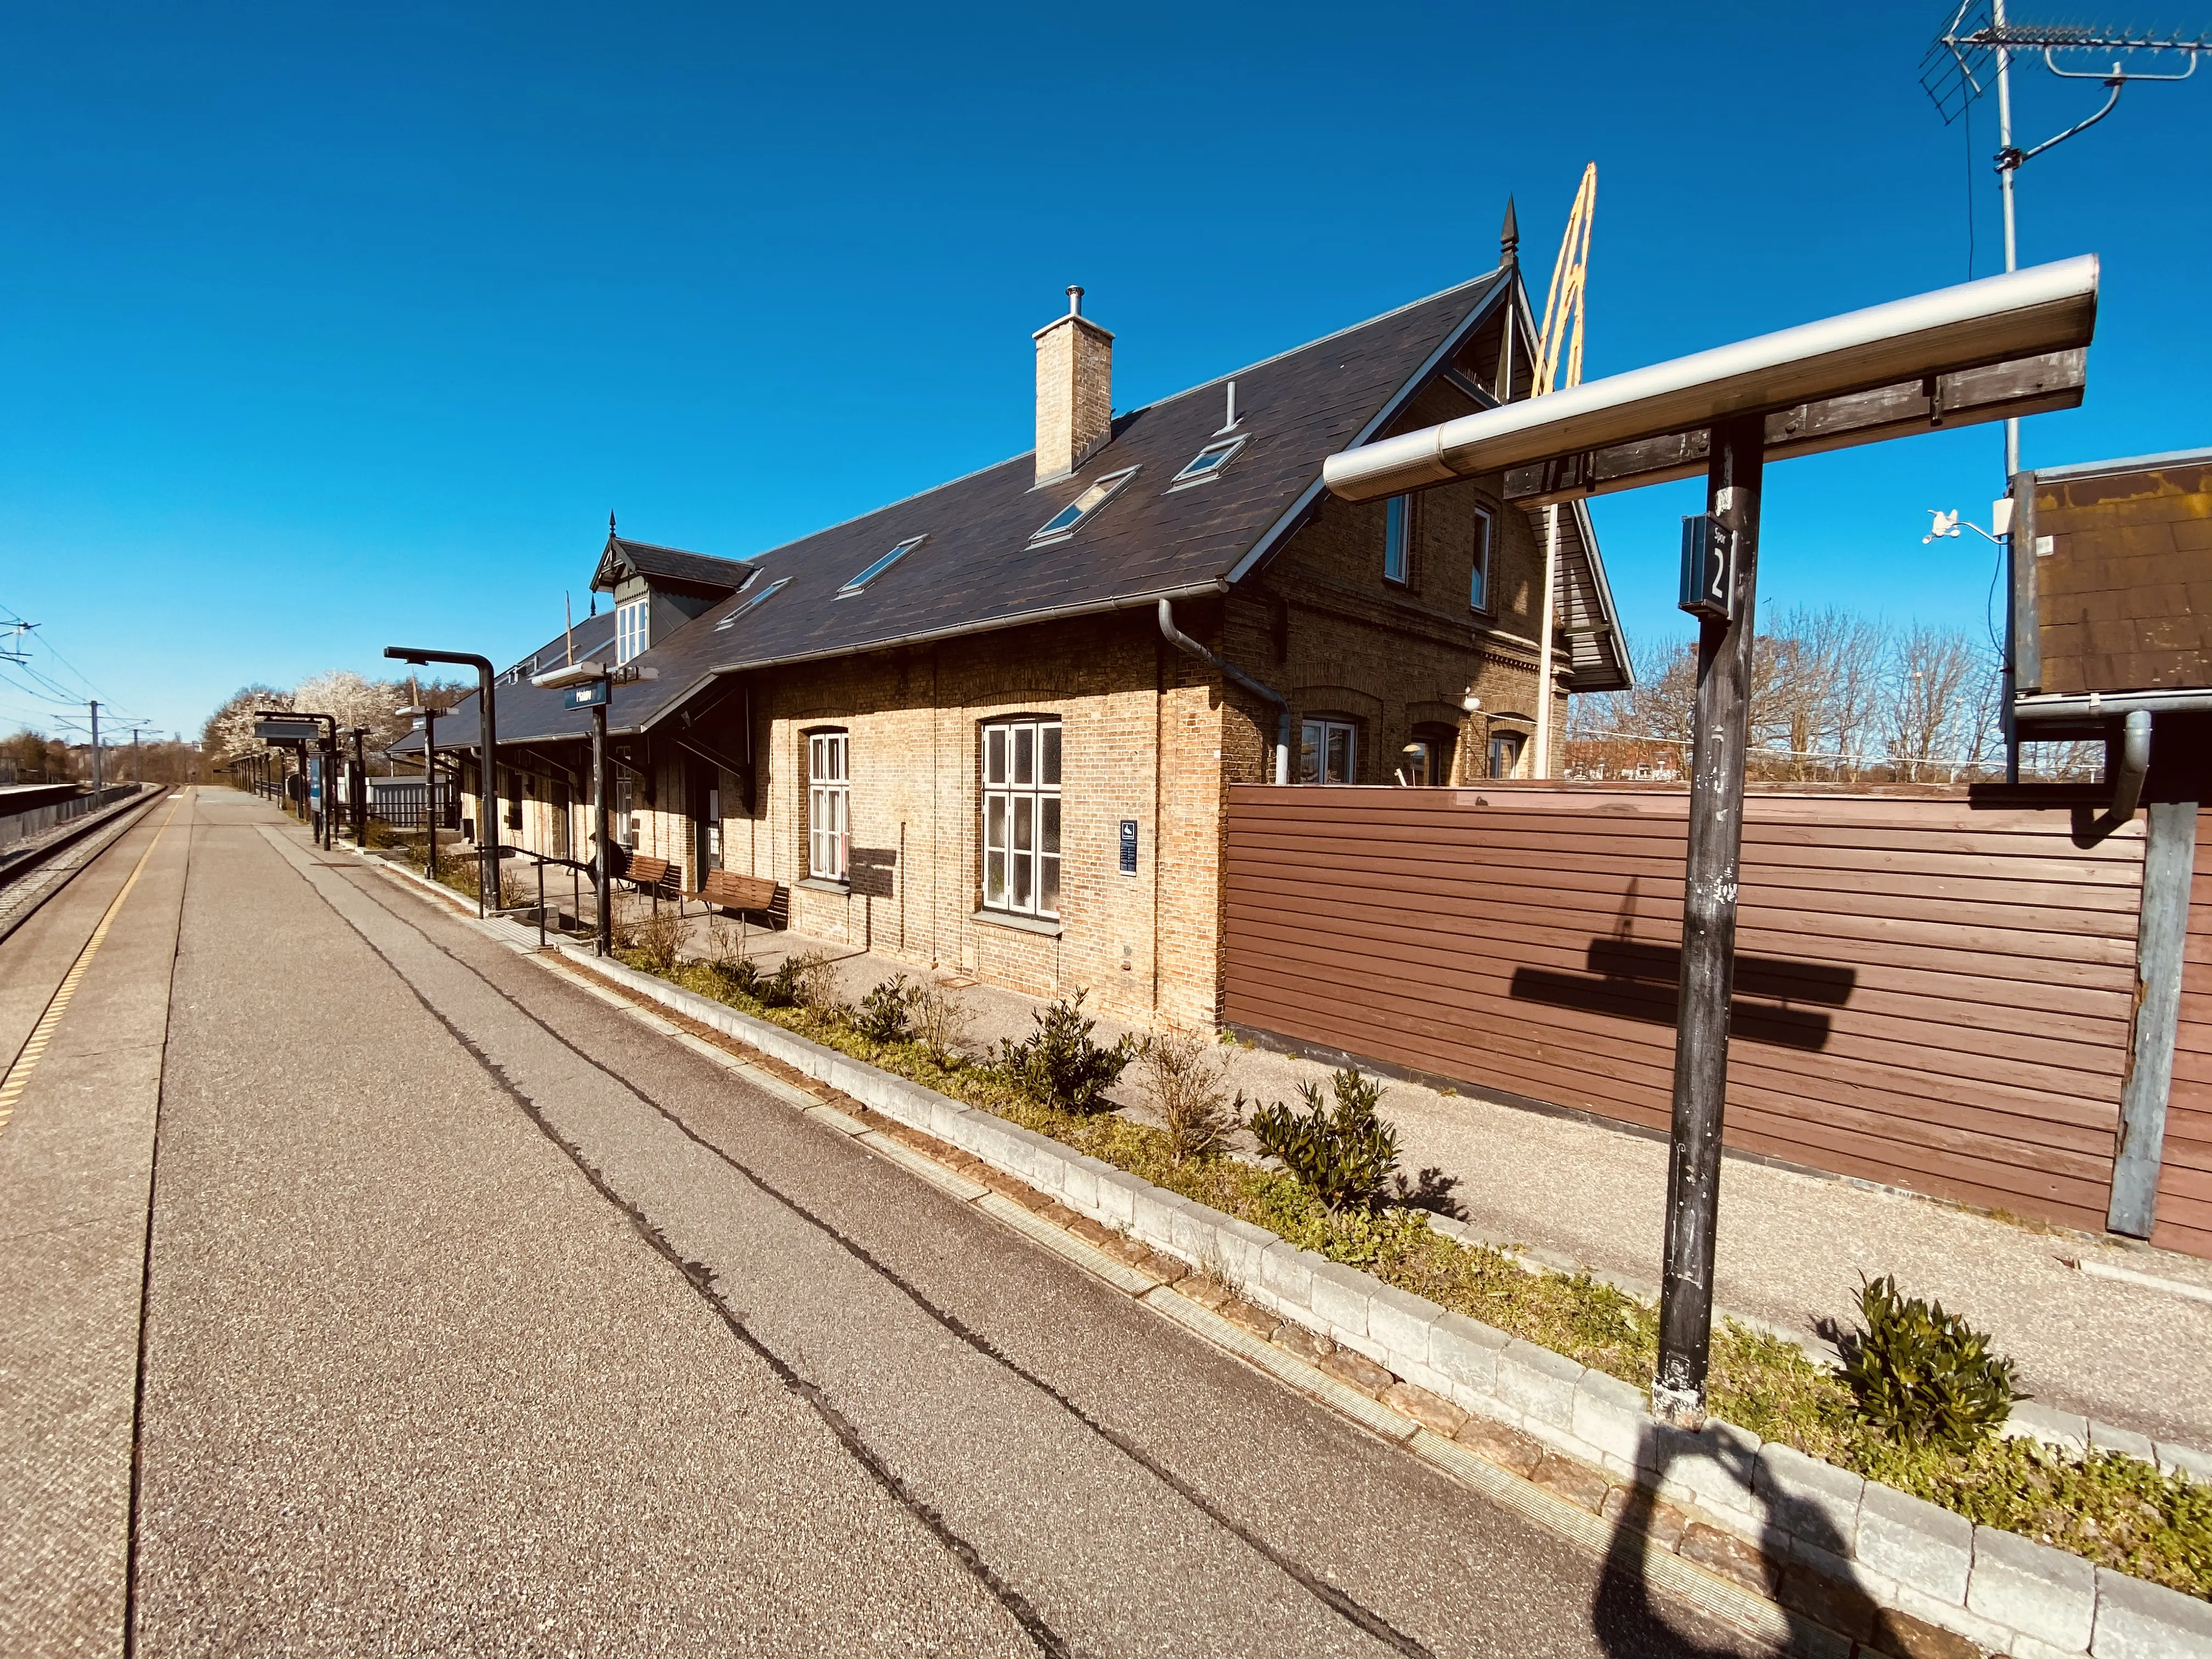 Billede af Måløv Station.